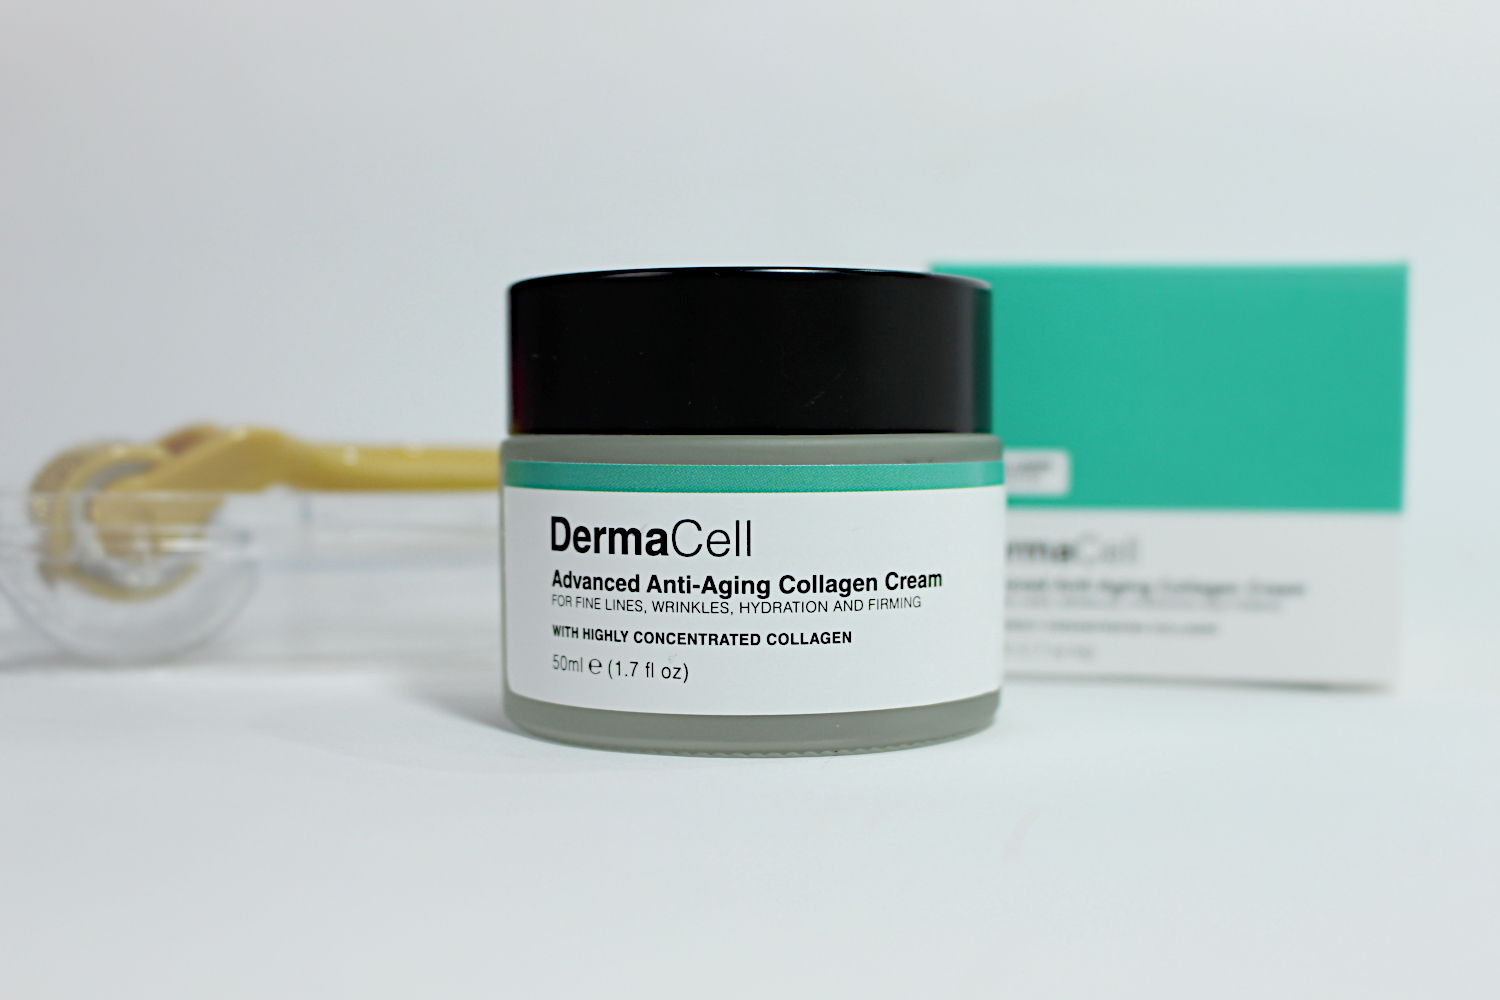 DermaCell Collagen Cream moisturizer review blogger